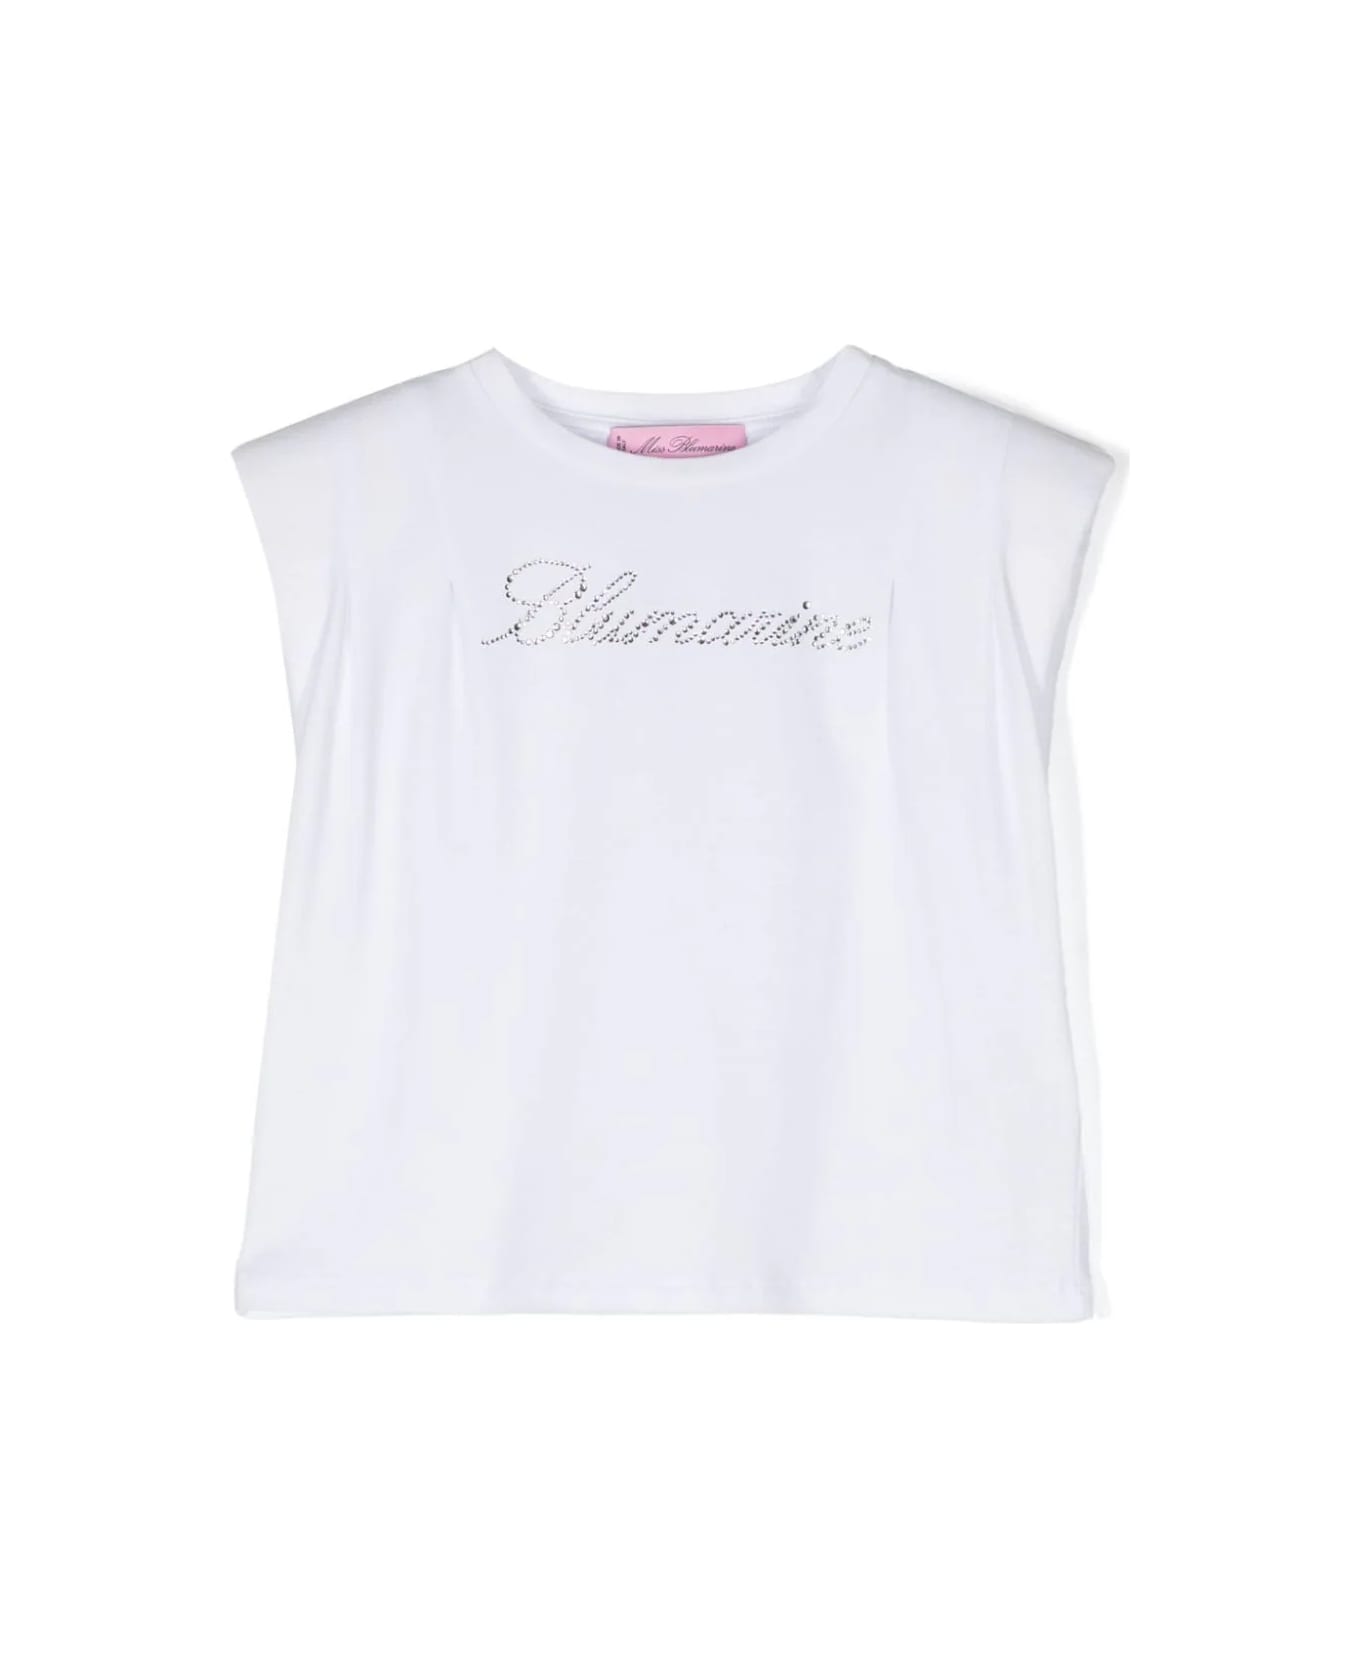 Miss Blumarine White T-shirt With Rhinestone Logo - White